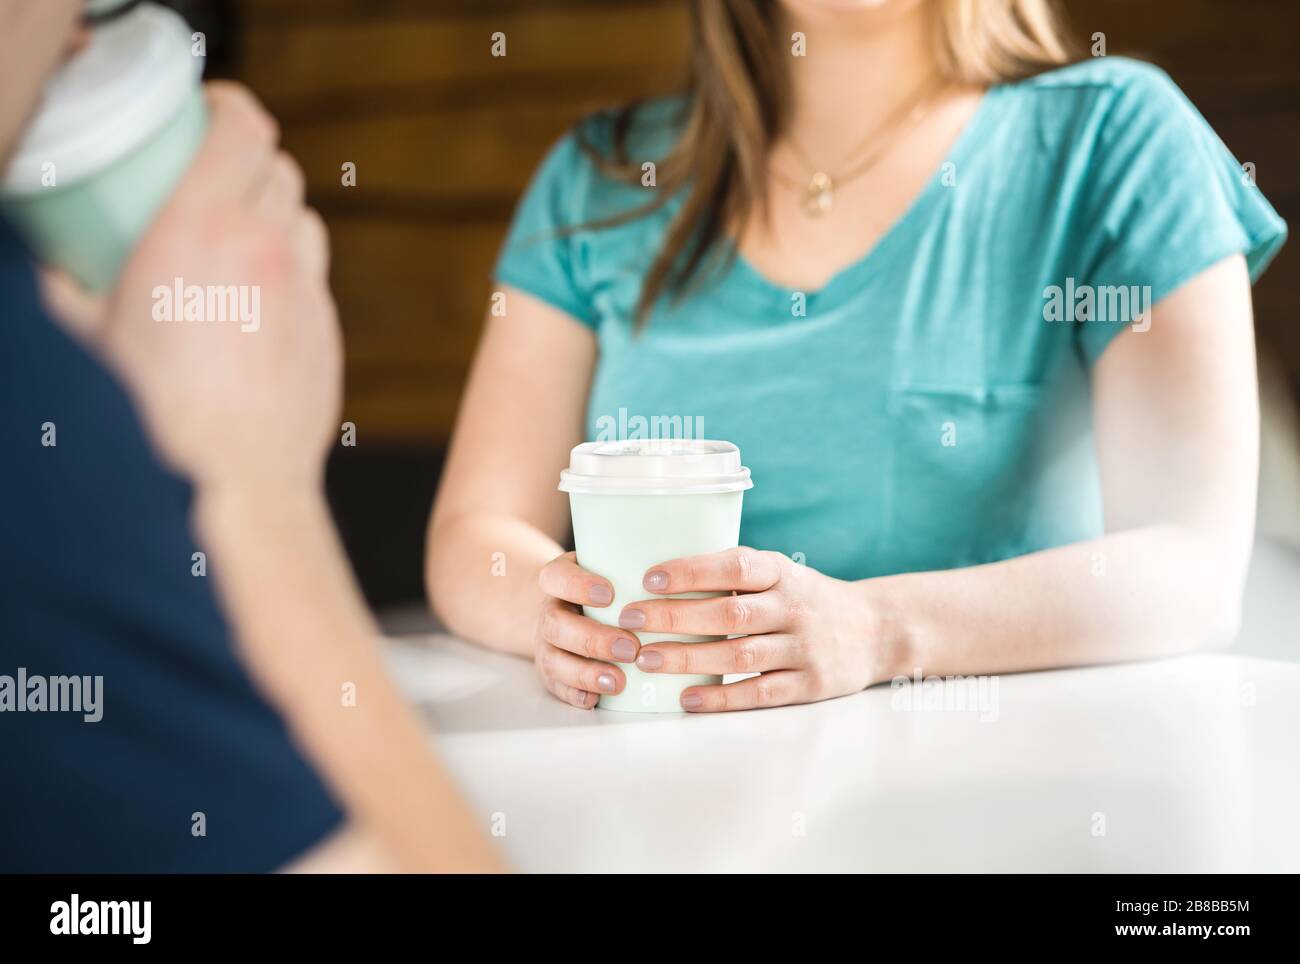 Frau und Mann haben zusammen Kaffee. Leute, die im Café sprechen und sich treffen. Blind oder erstes Datum. Dating- oder Freundschaftskonzept. Stockfoto